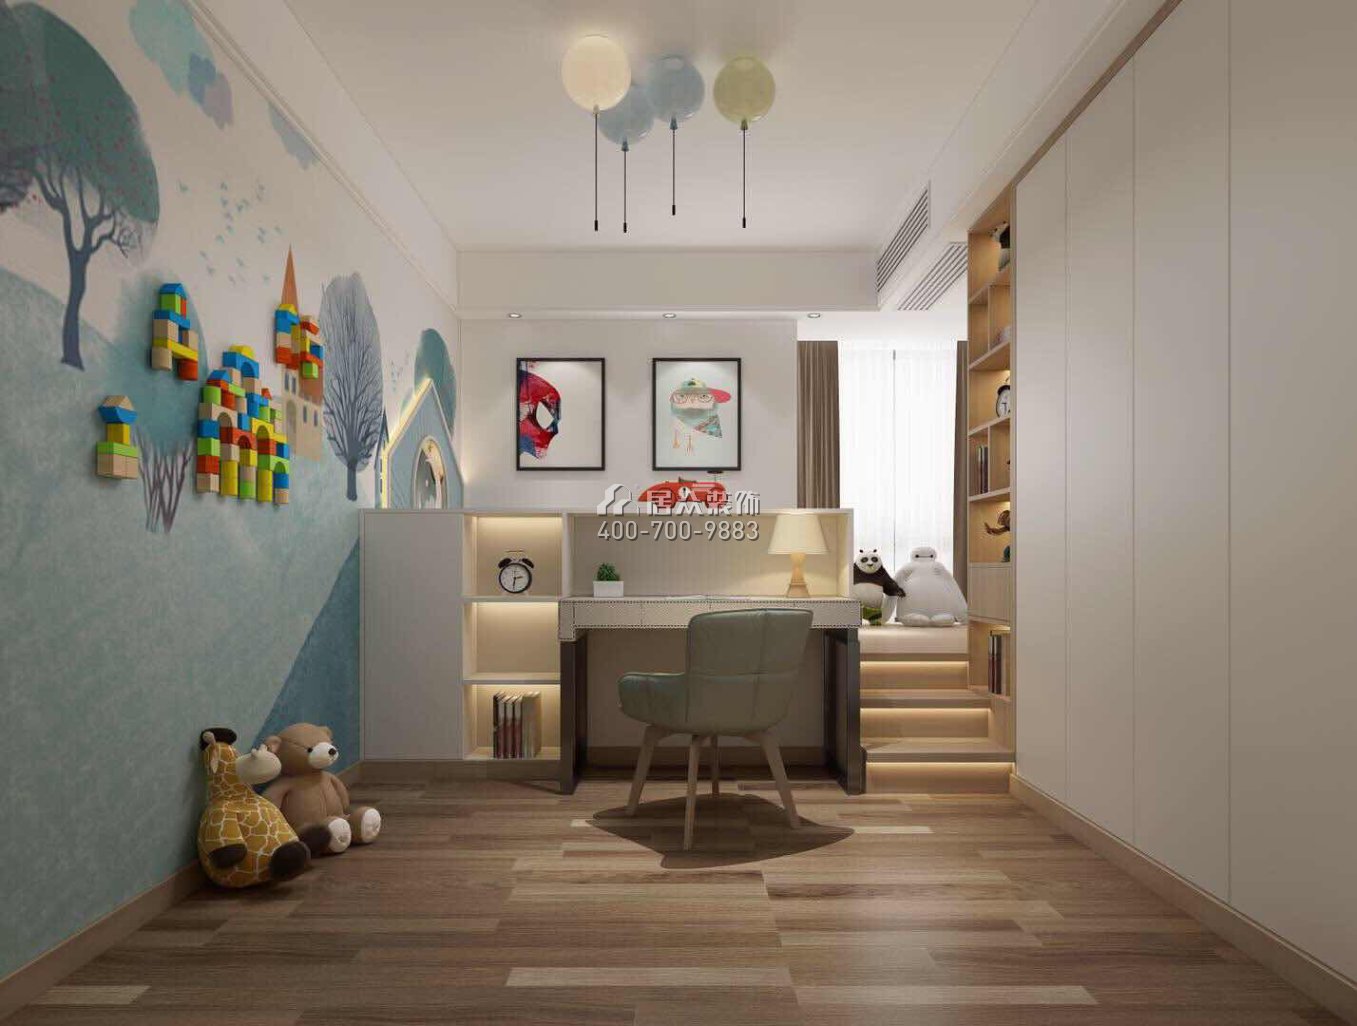 鼎峰尚境155平方米現代簡約風格平層戶型兒童房裝修效果圖